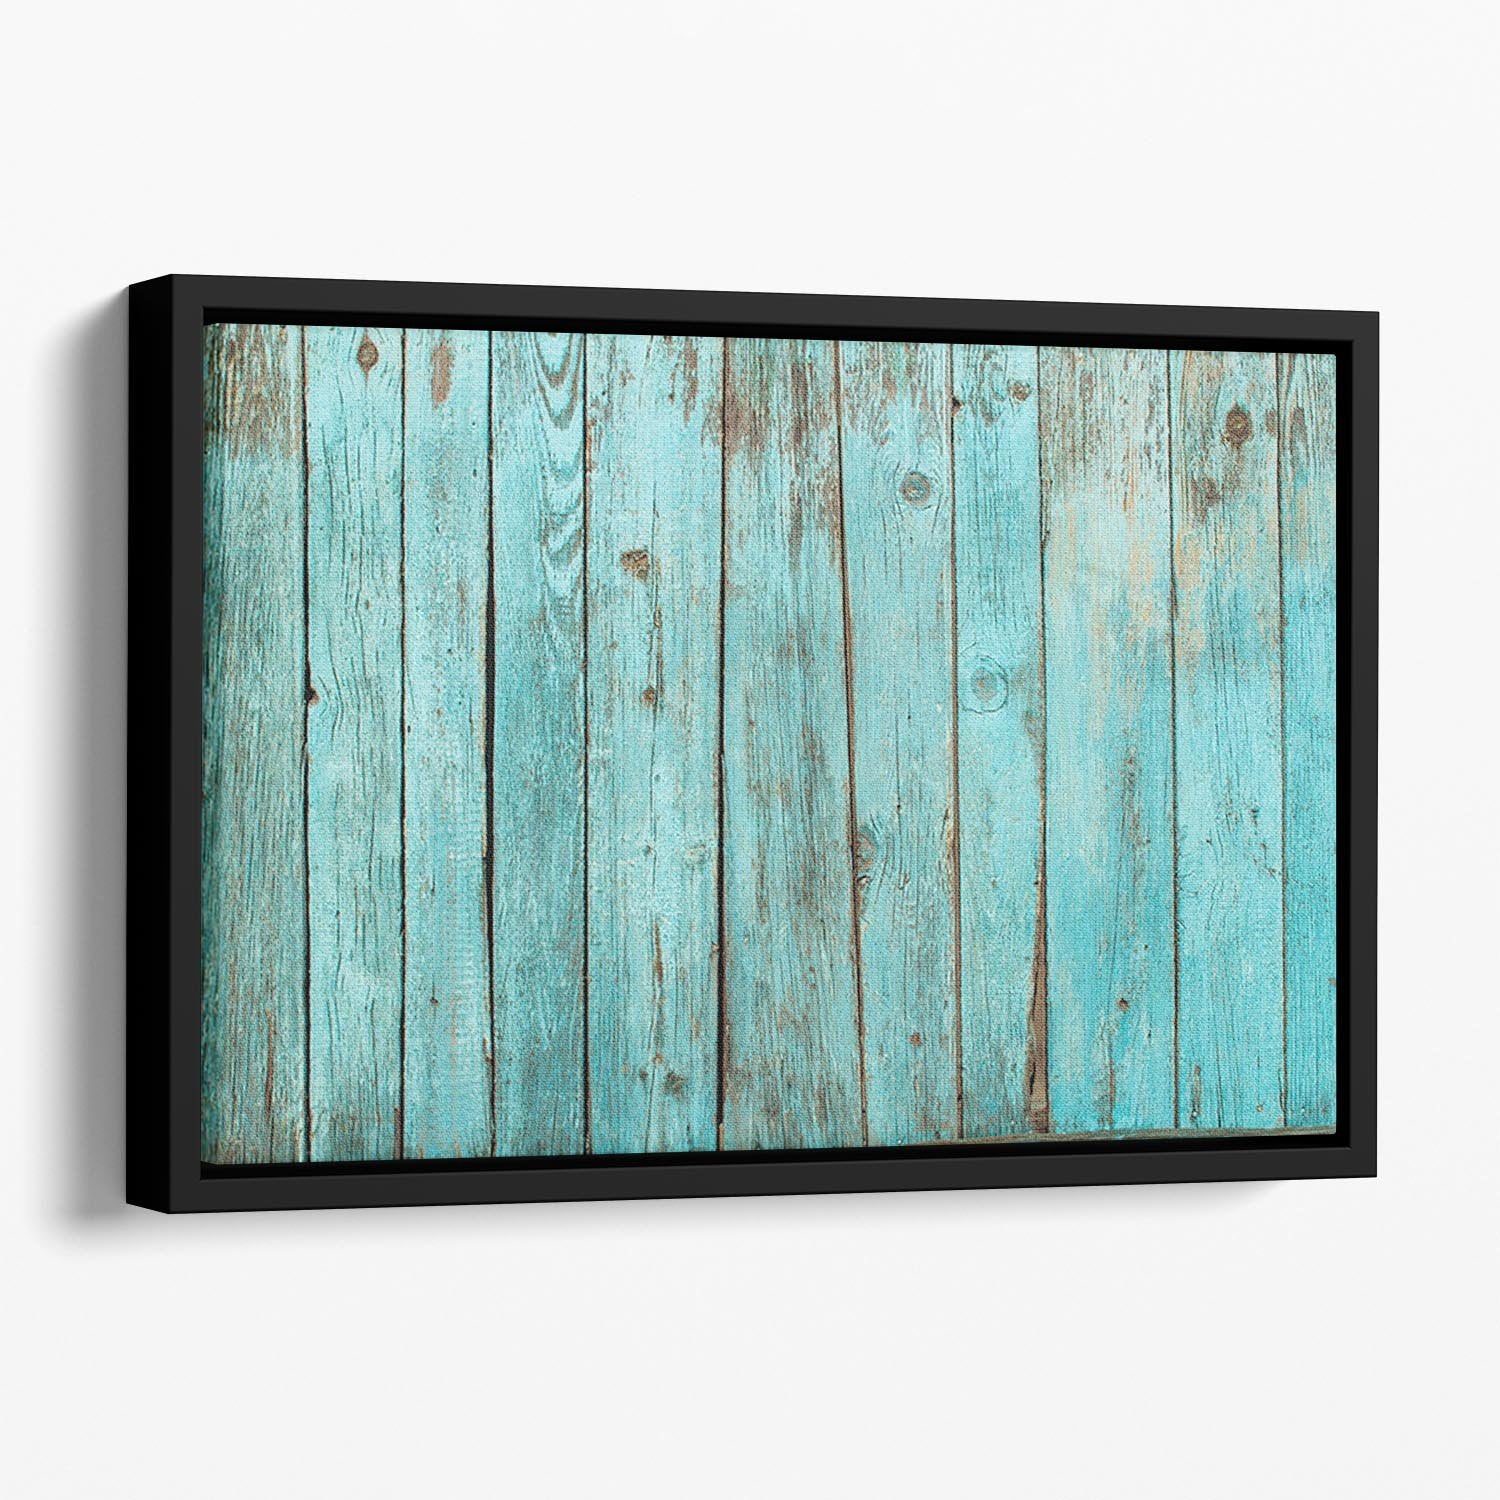 Battered old wooden blue Floating Framed Canvas - Canvas Art Rocks - 1